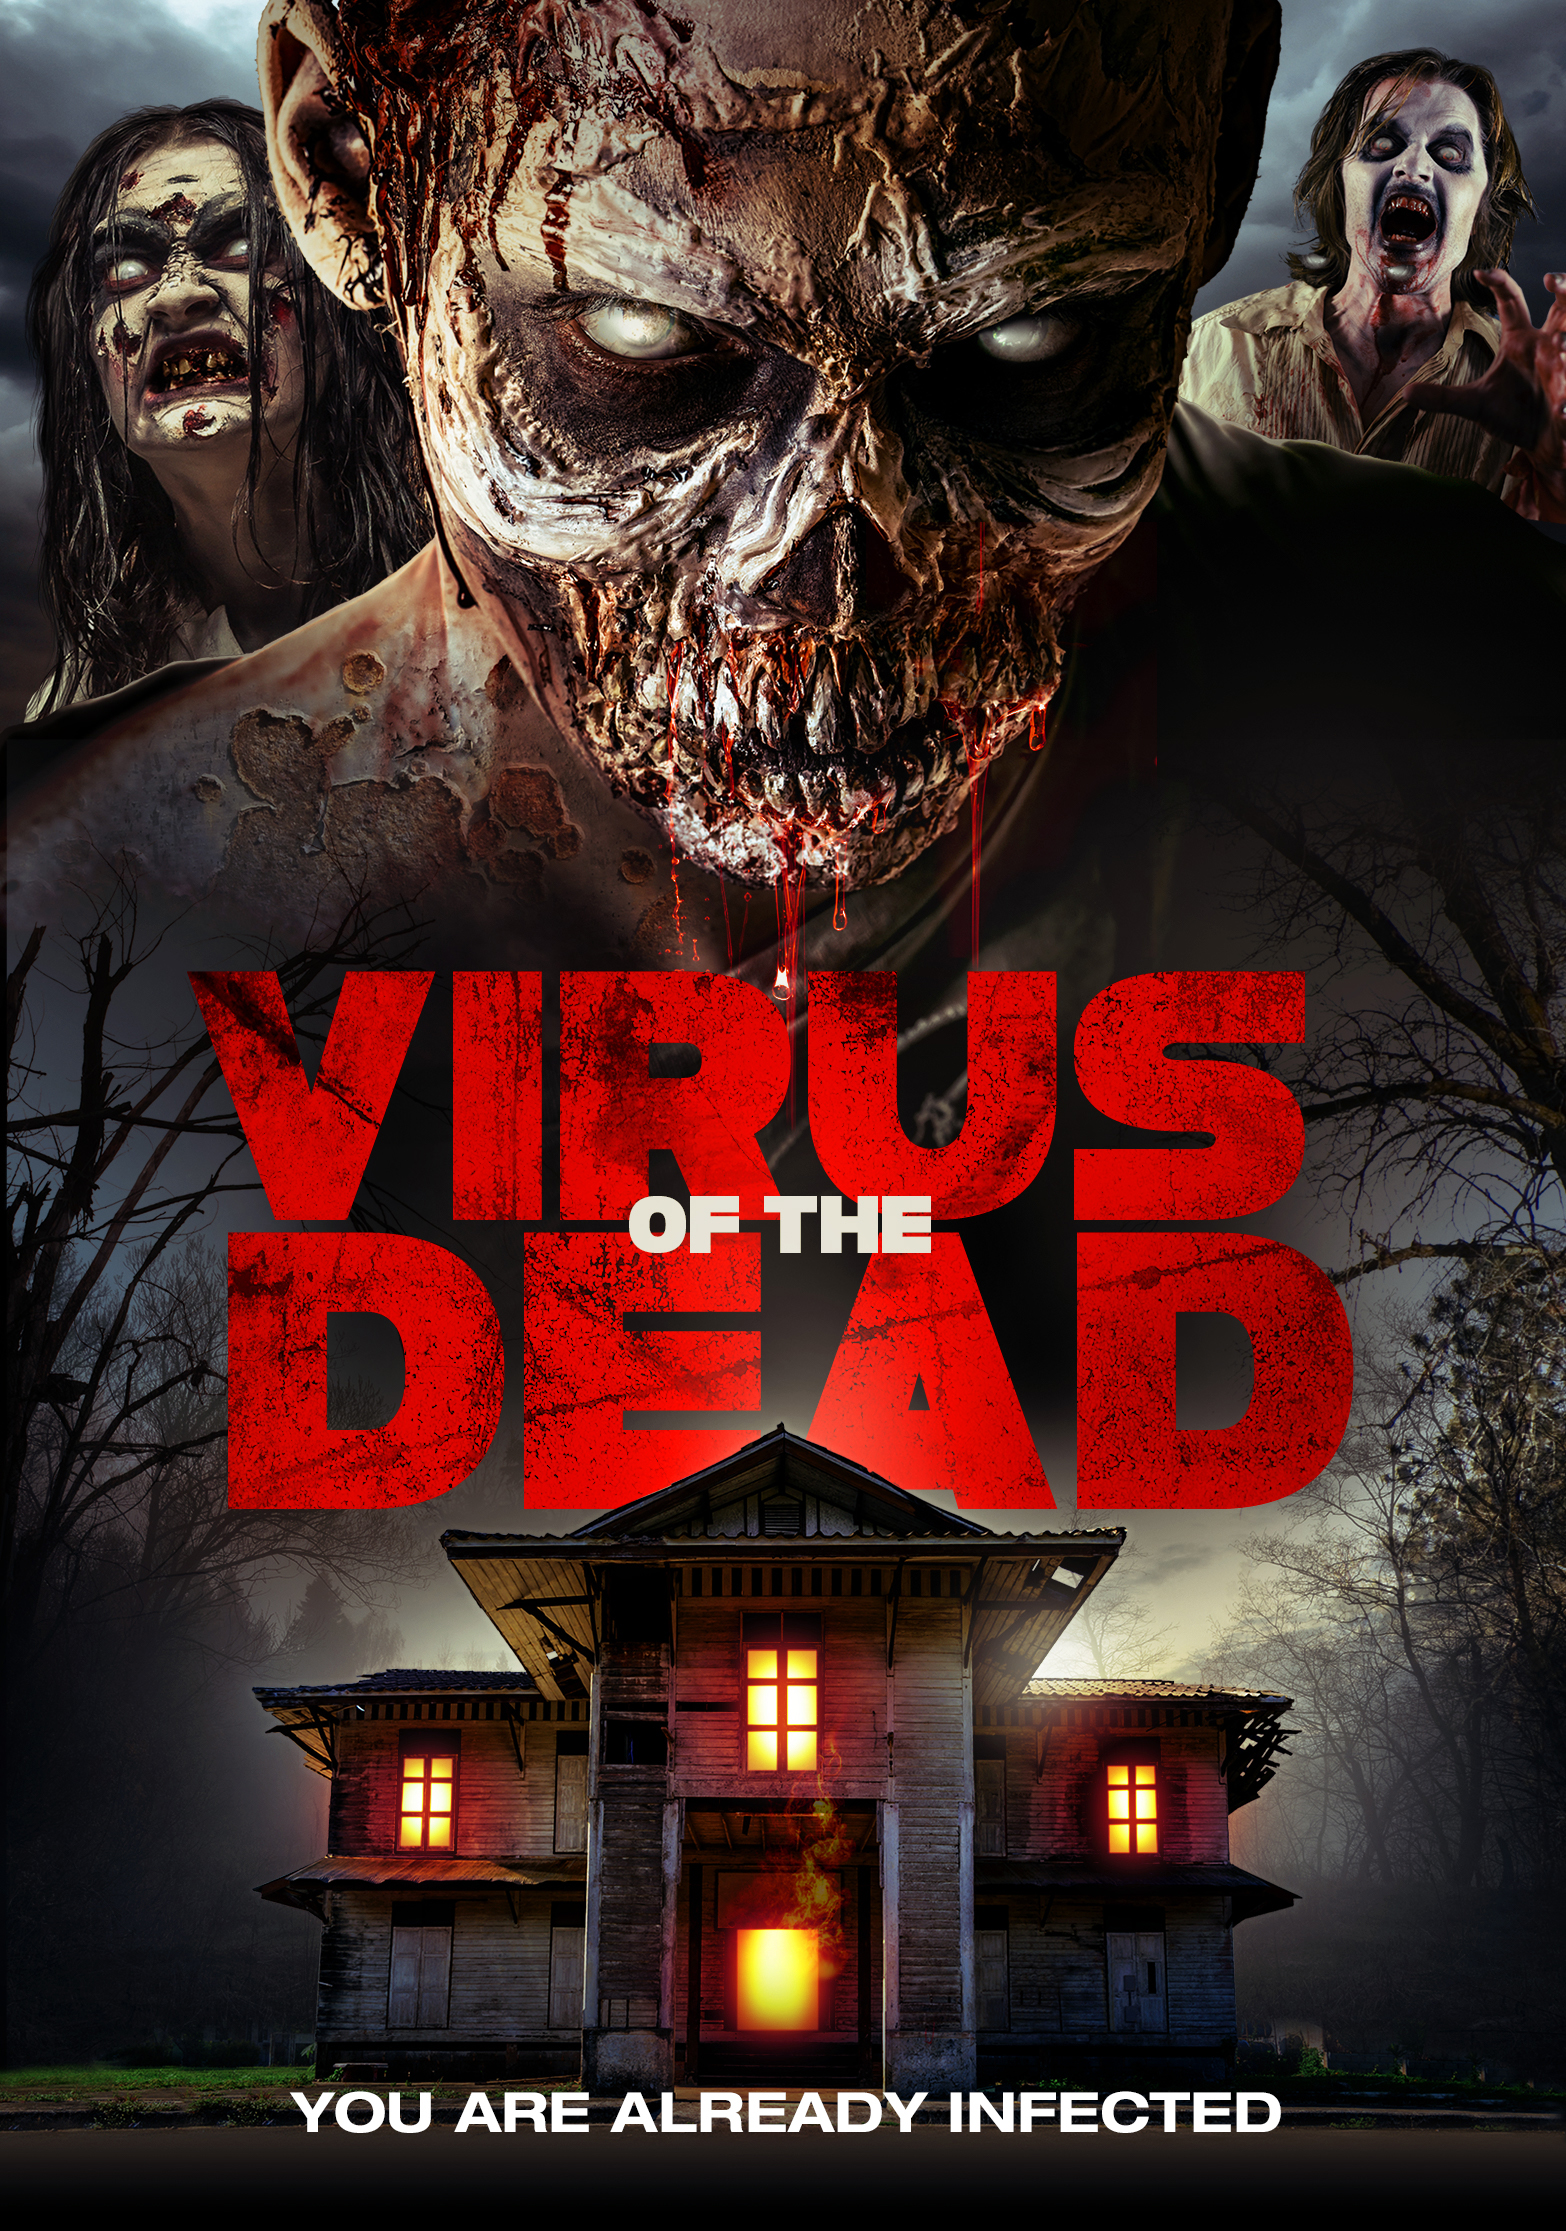 Nonton film Virus of the Dead layarkaca21 indoxx1 ganool online streaming terbaru